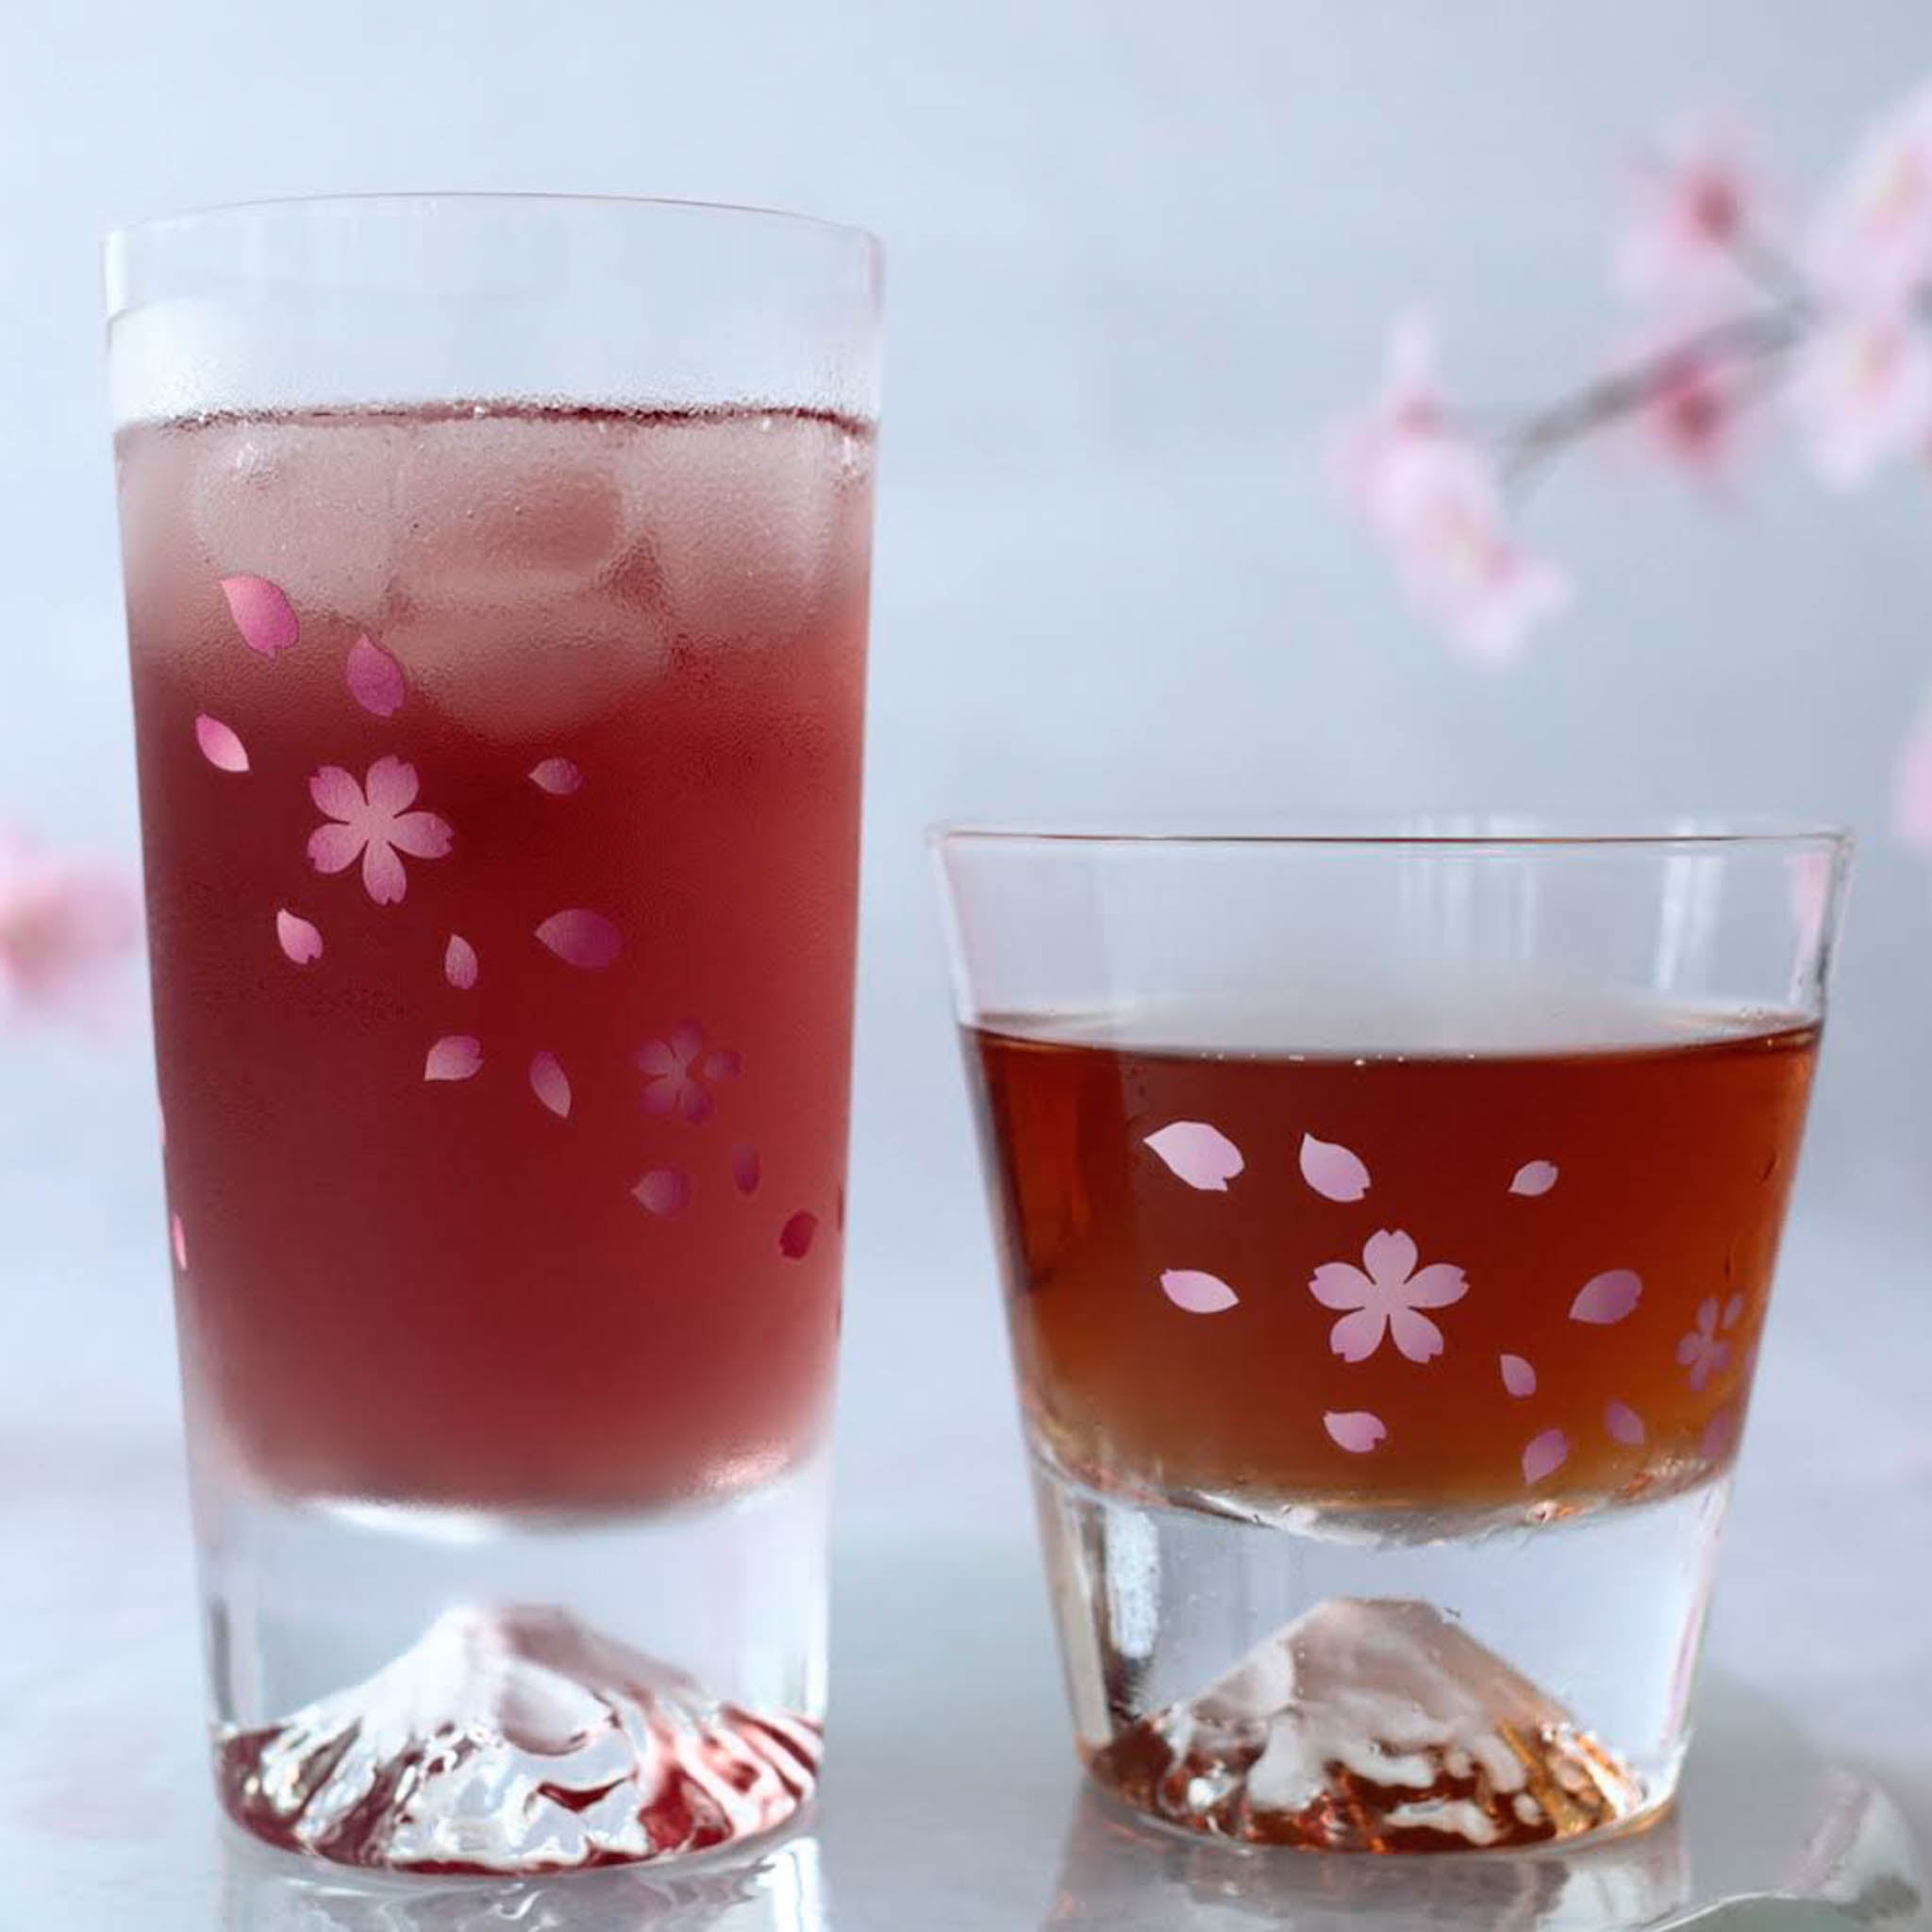 江戸硝子 ロックグラス | 冷感桜舞富士山 | 丸モ高木陶器